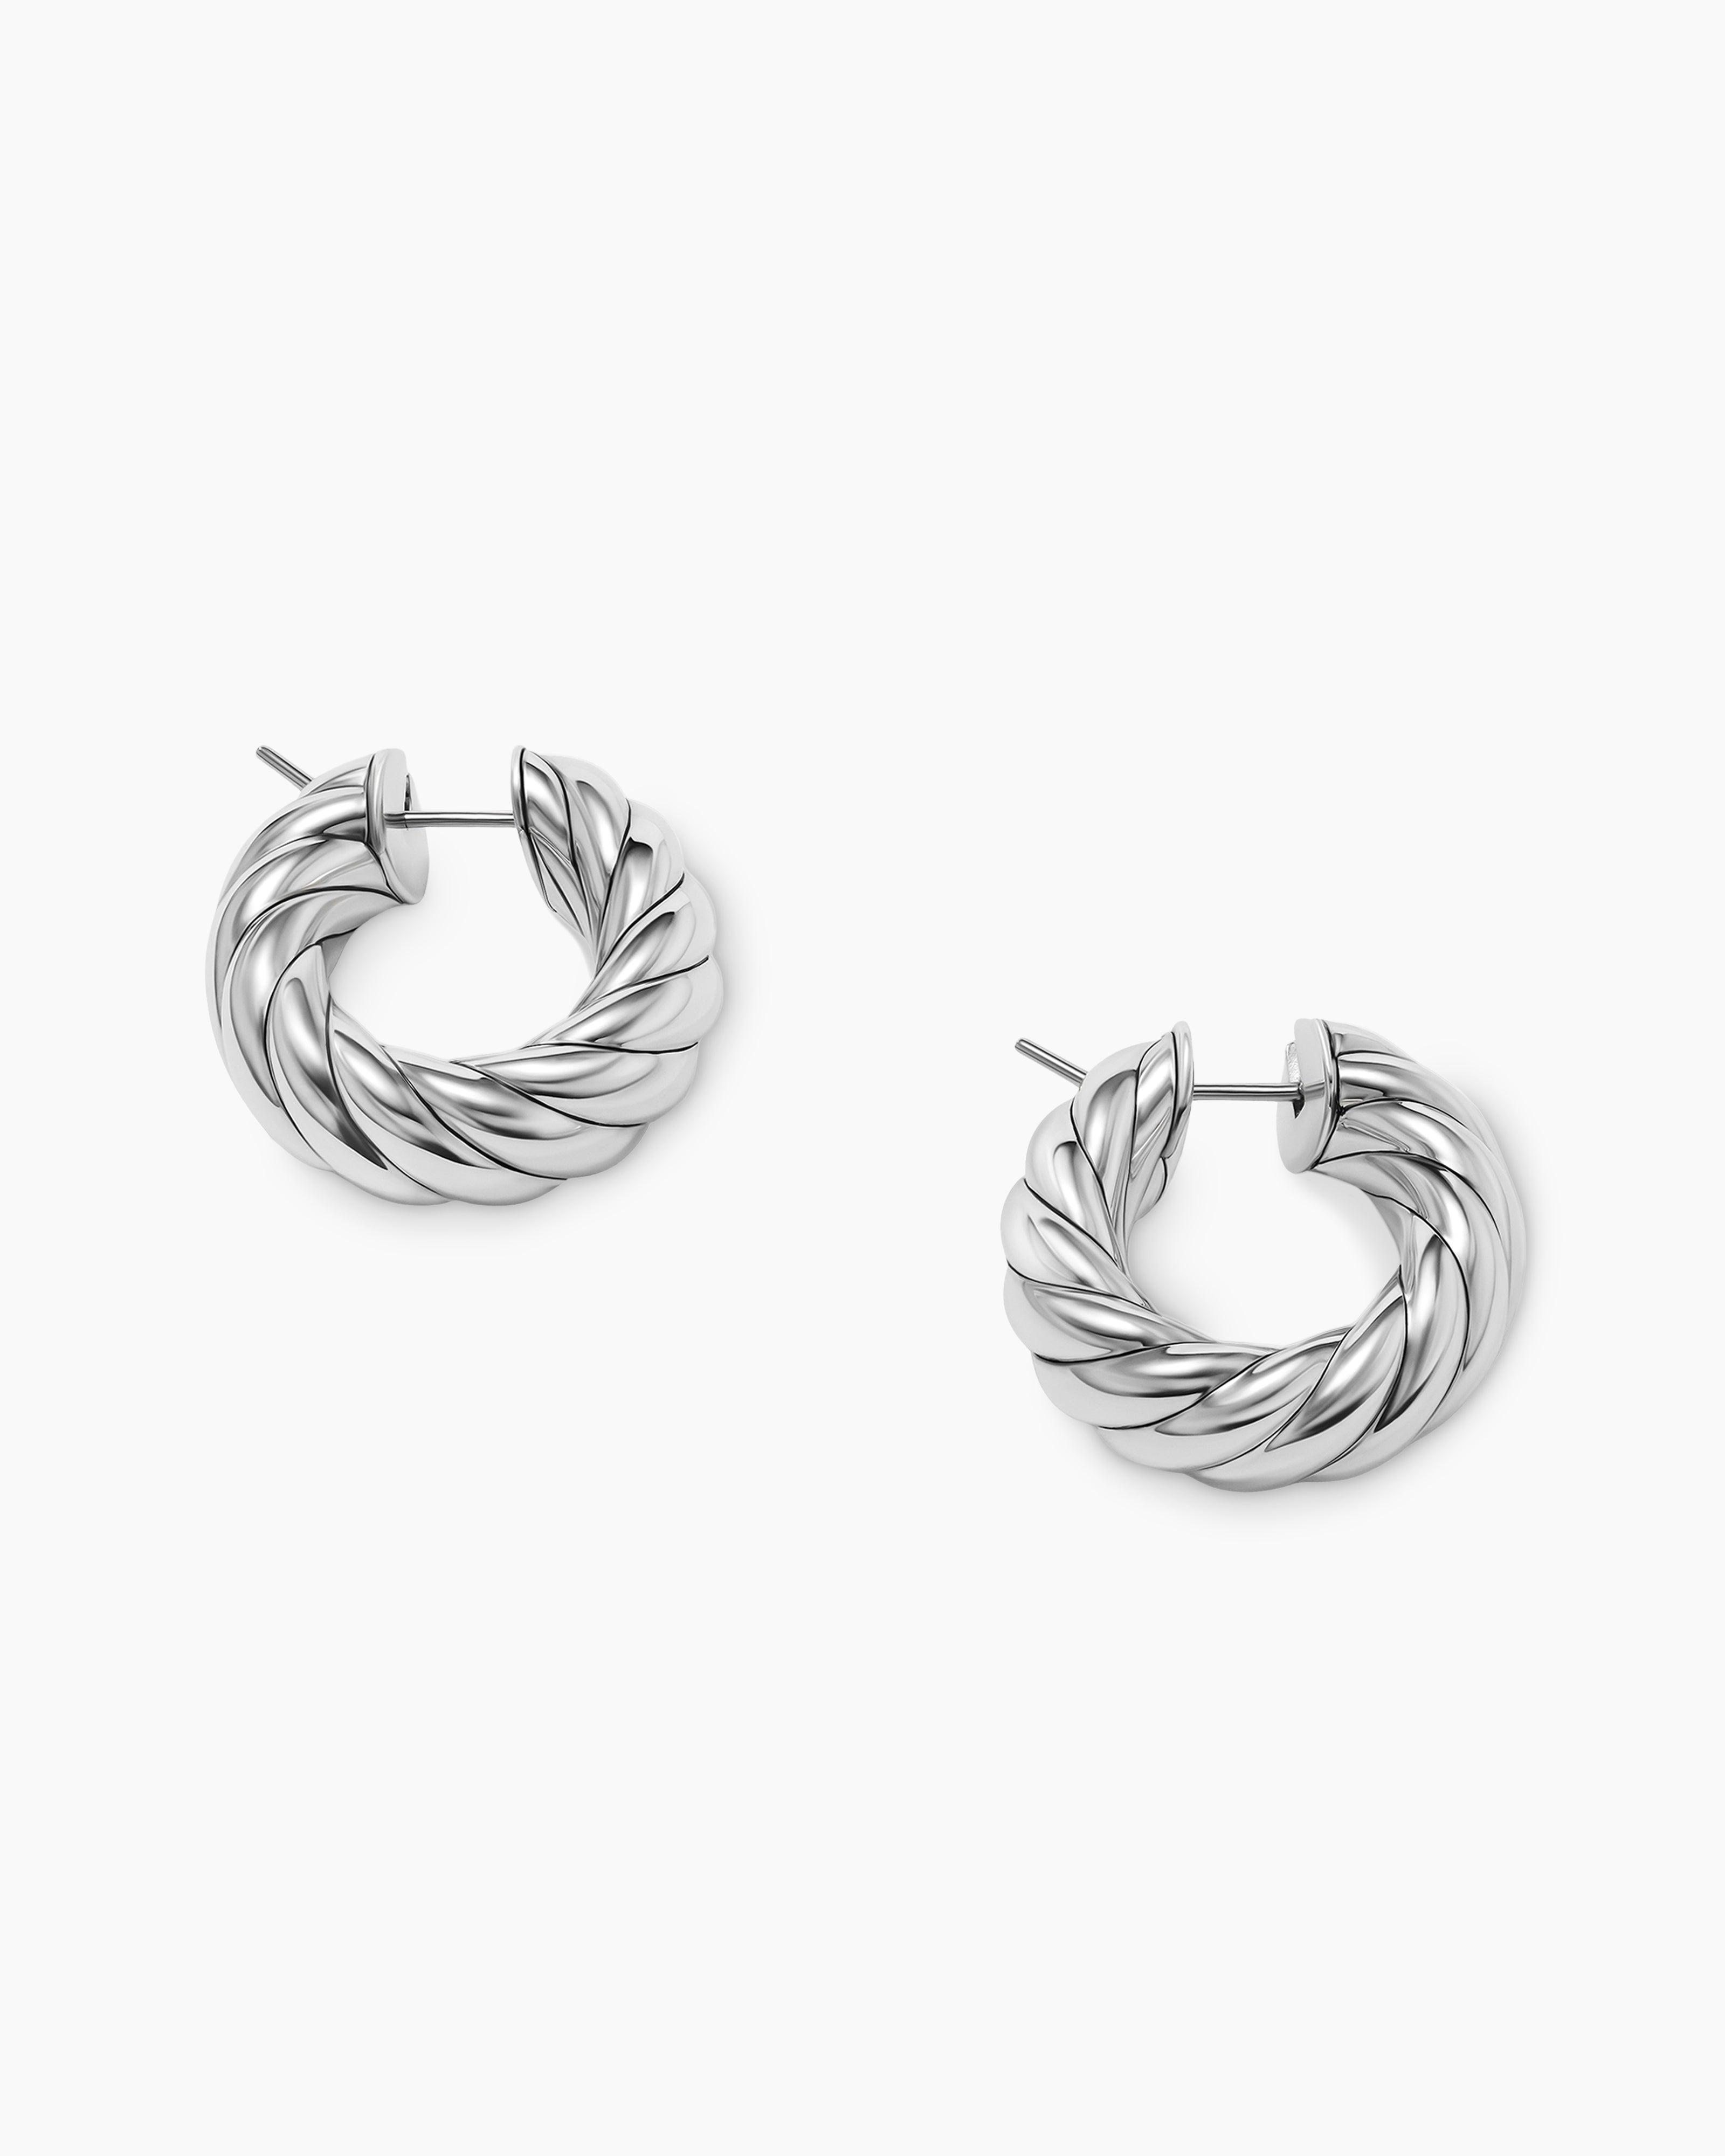 Silver Hoop Earring Set – Hoops By Hand